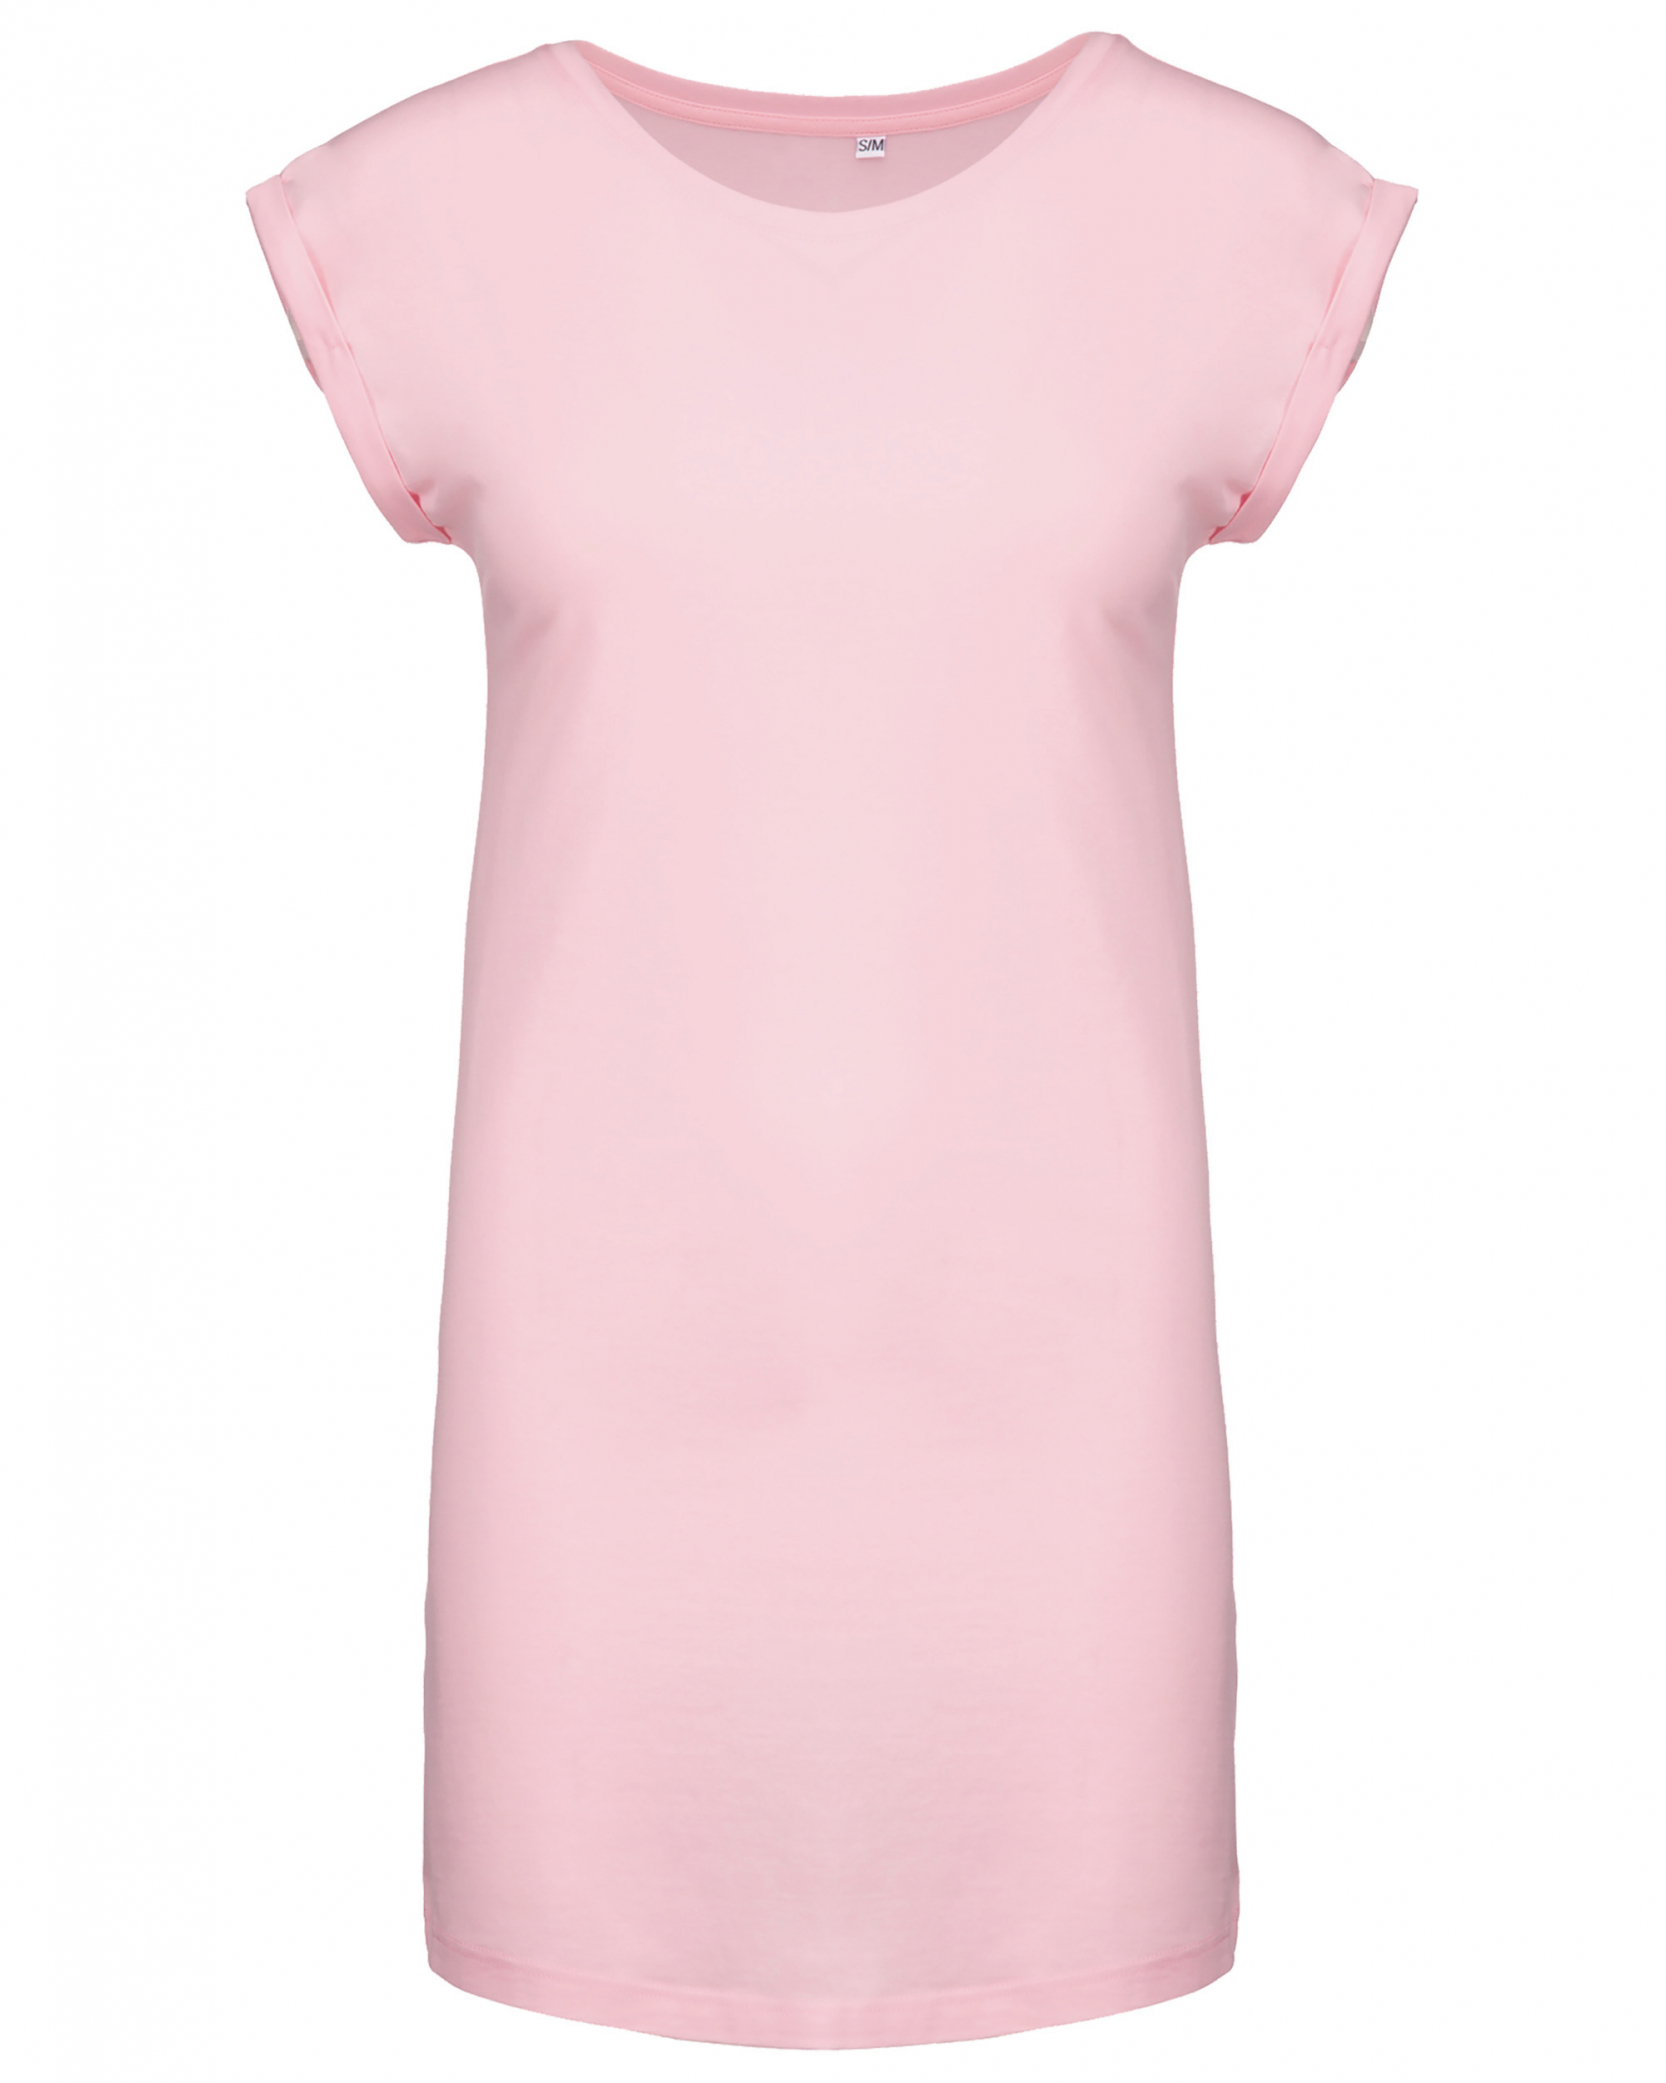 Dámské dlouhé tričko - šaty Barva: světle růžová, Velikost: L/XL